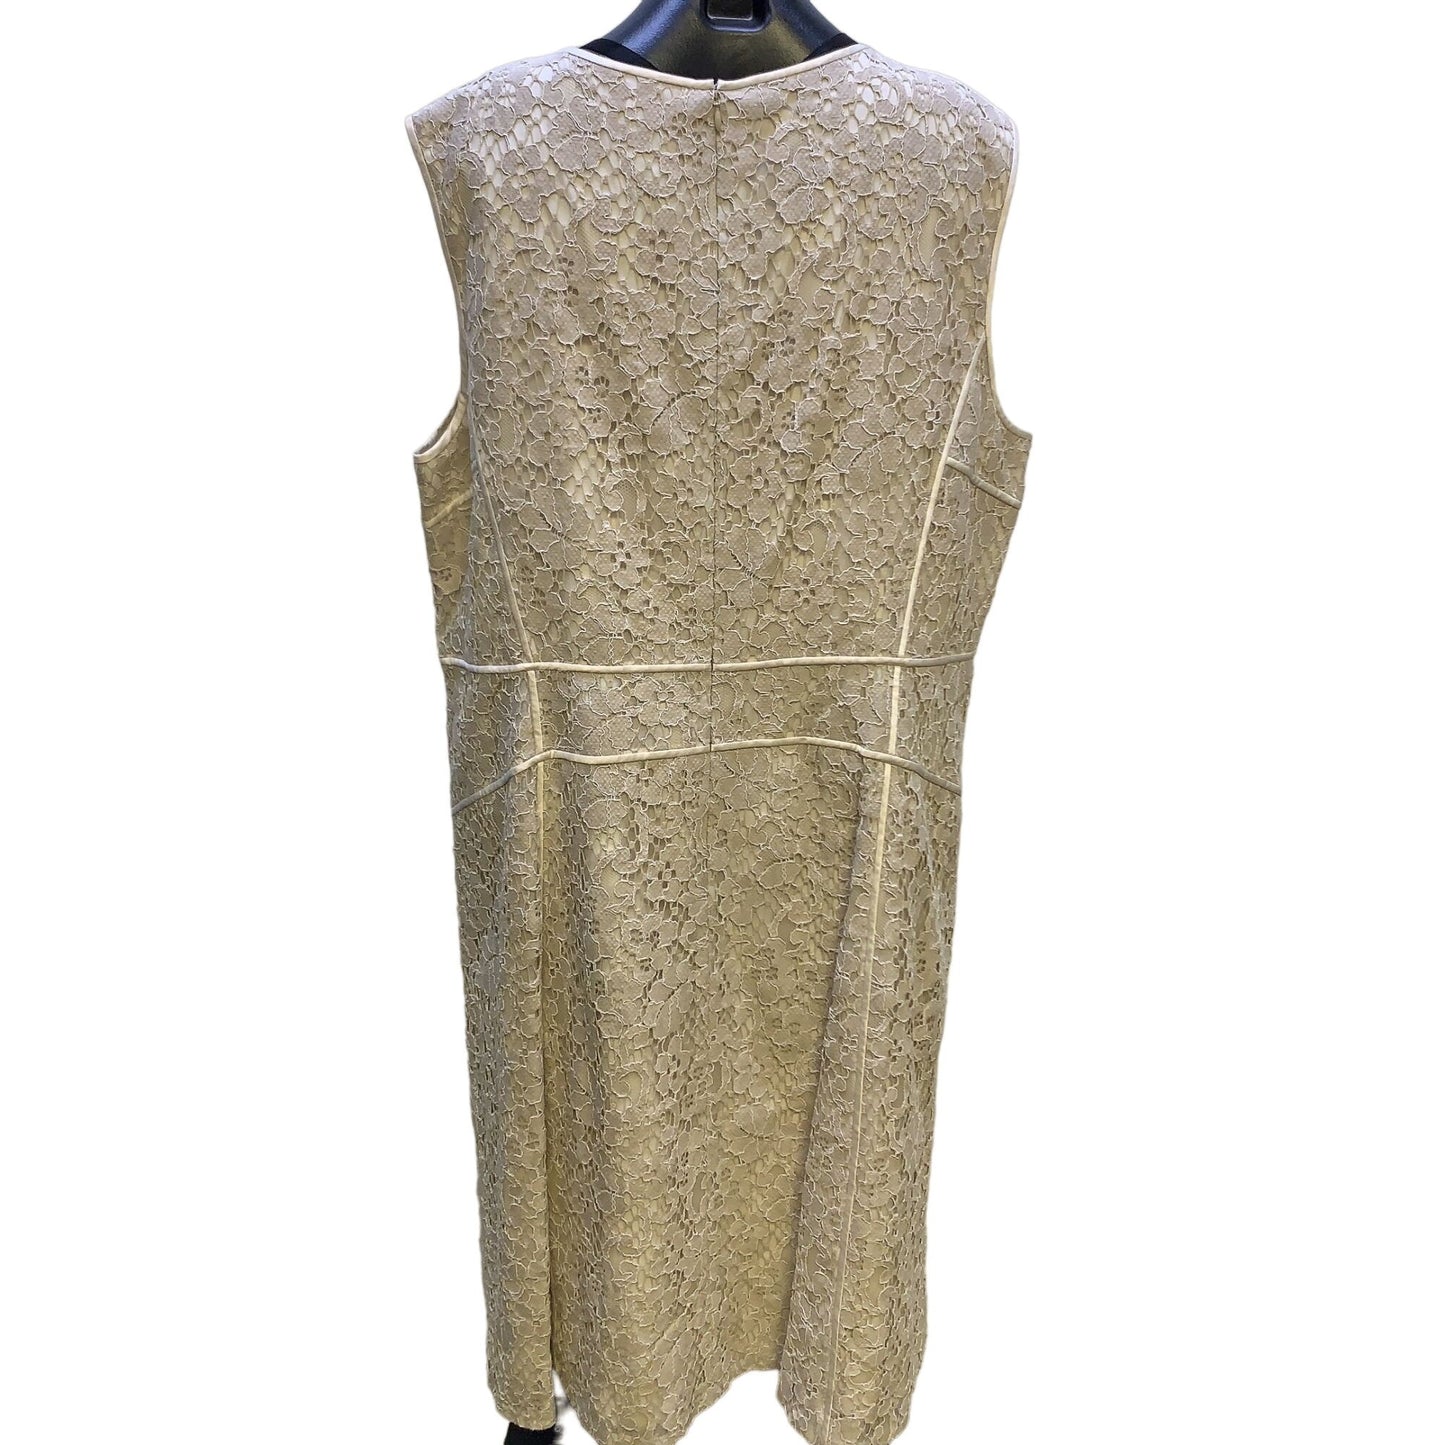 *Lafayette 148 Ivory Lined Lace Sleeveless Dress Size 22W